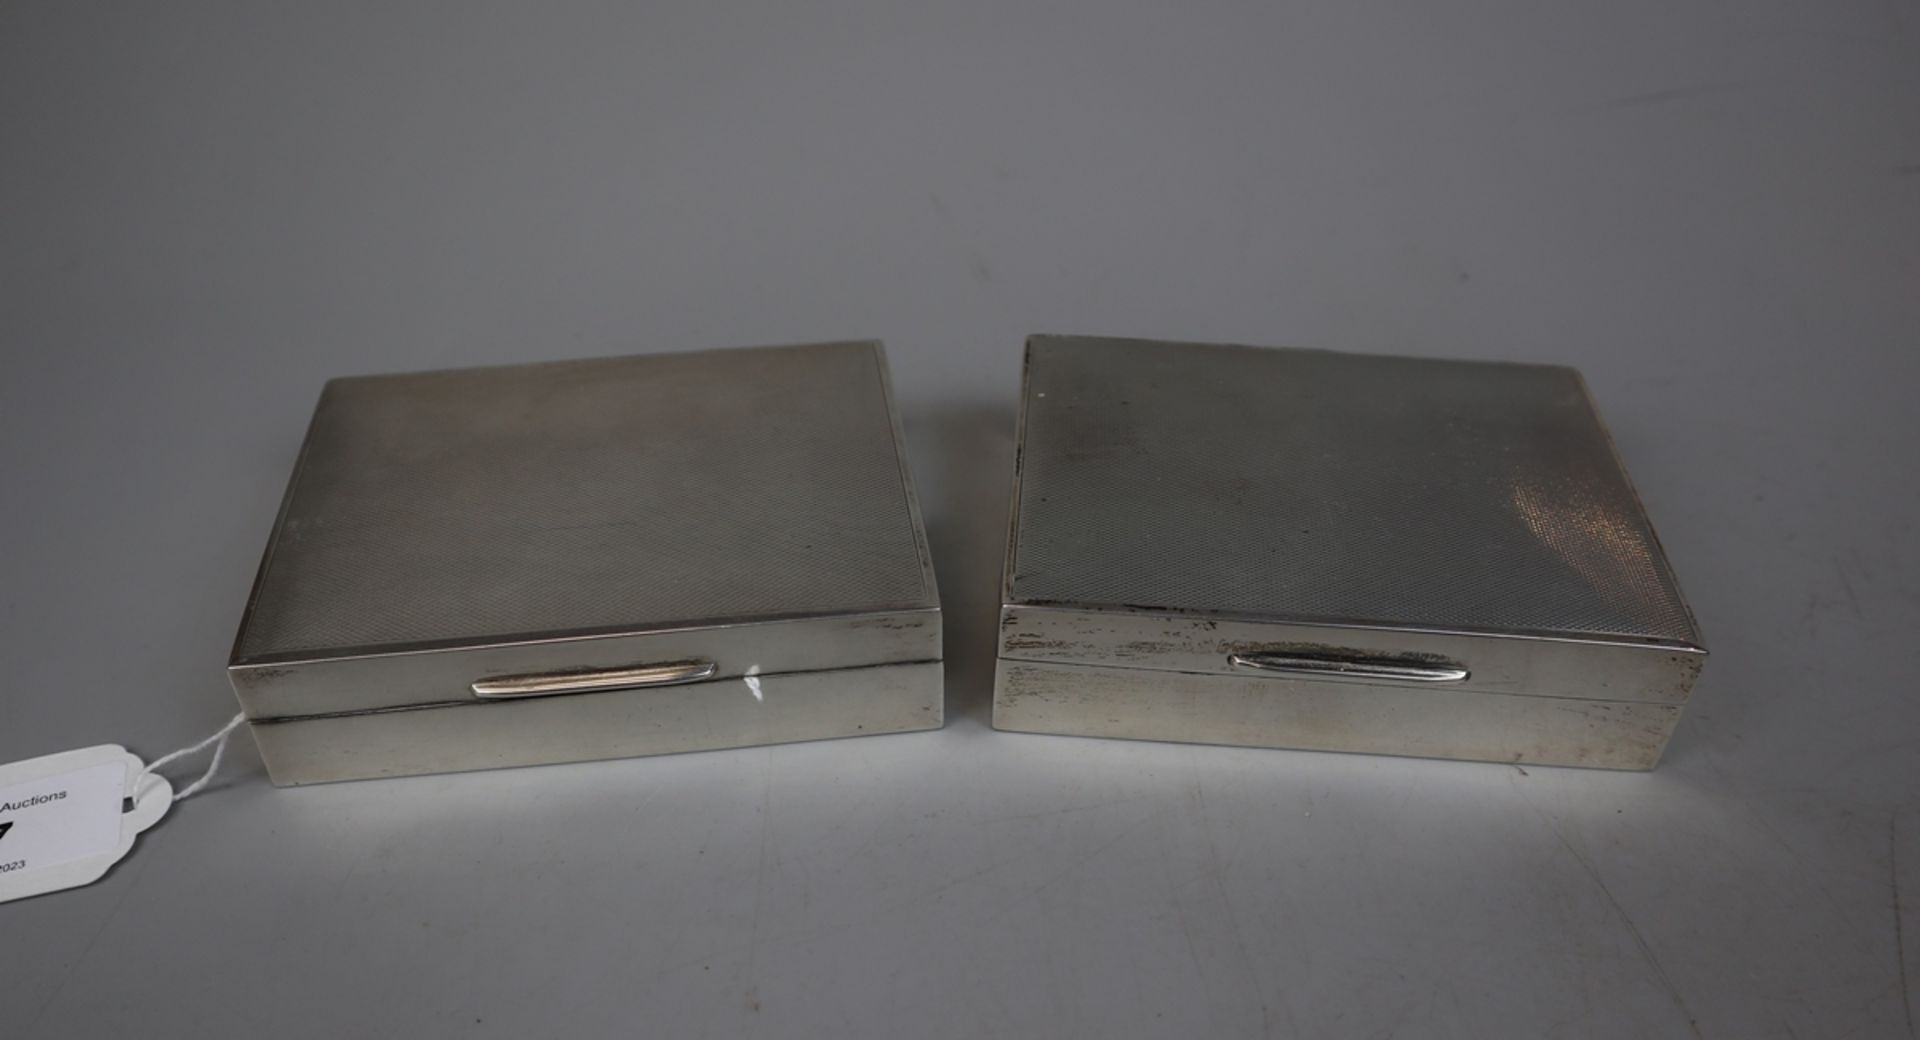 2 hallmarked silver cigarette boxes